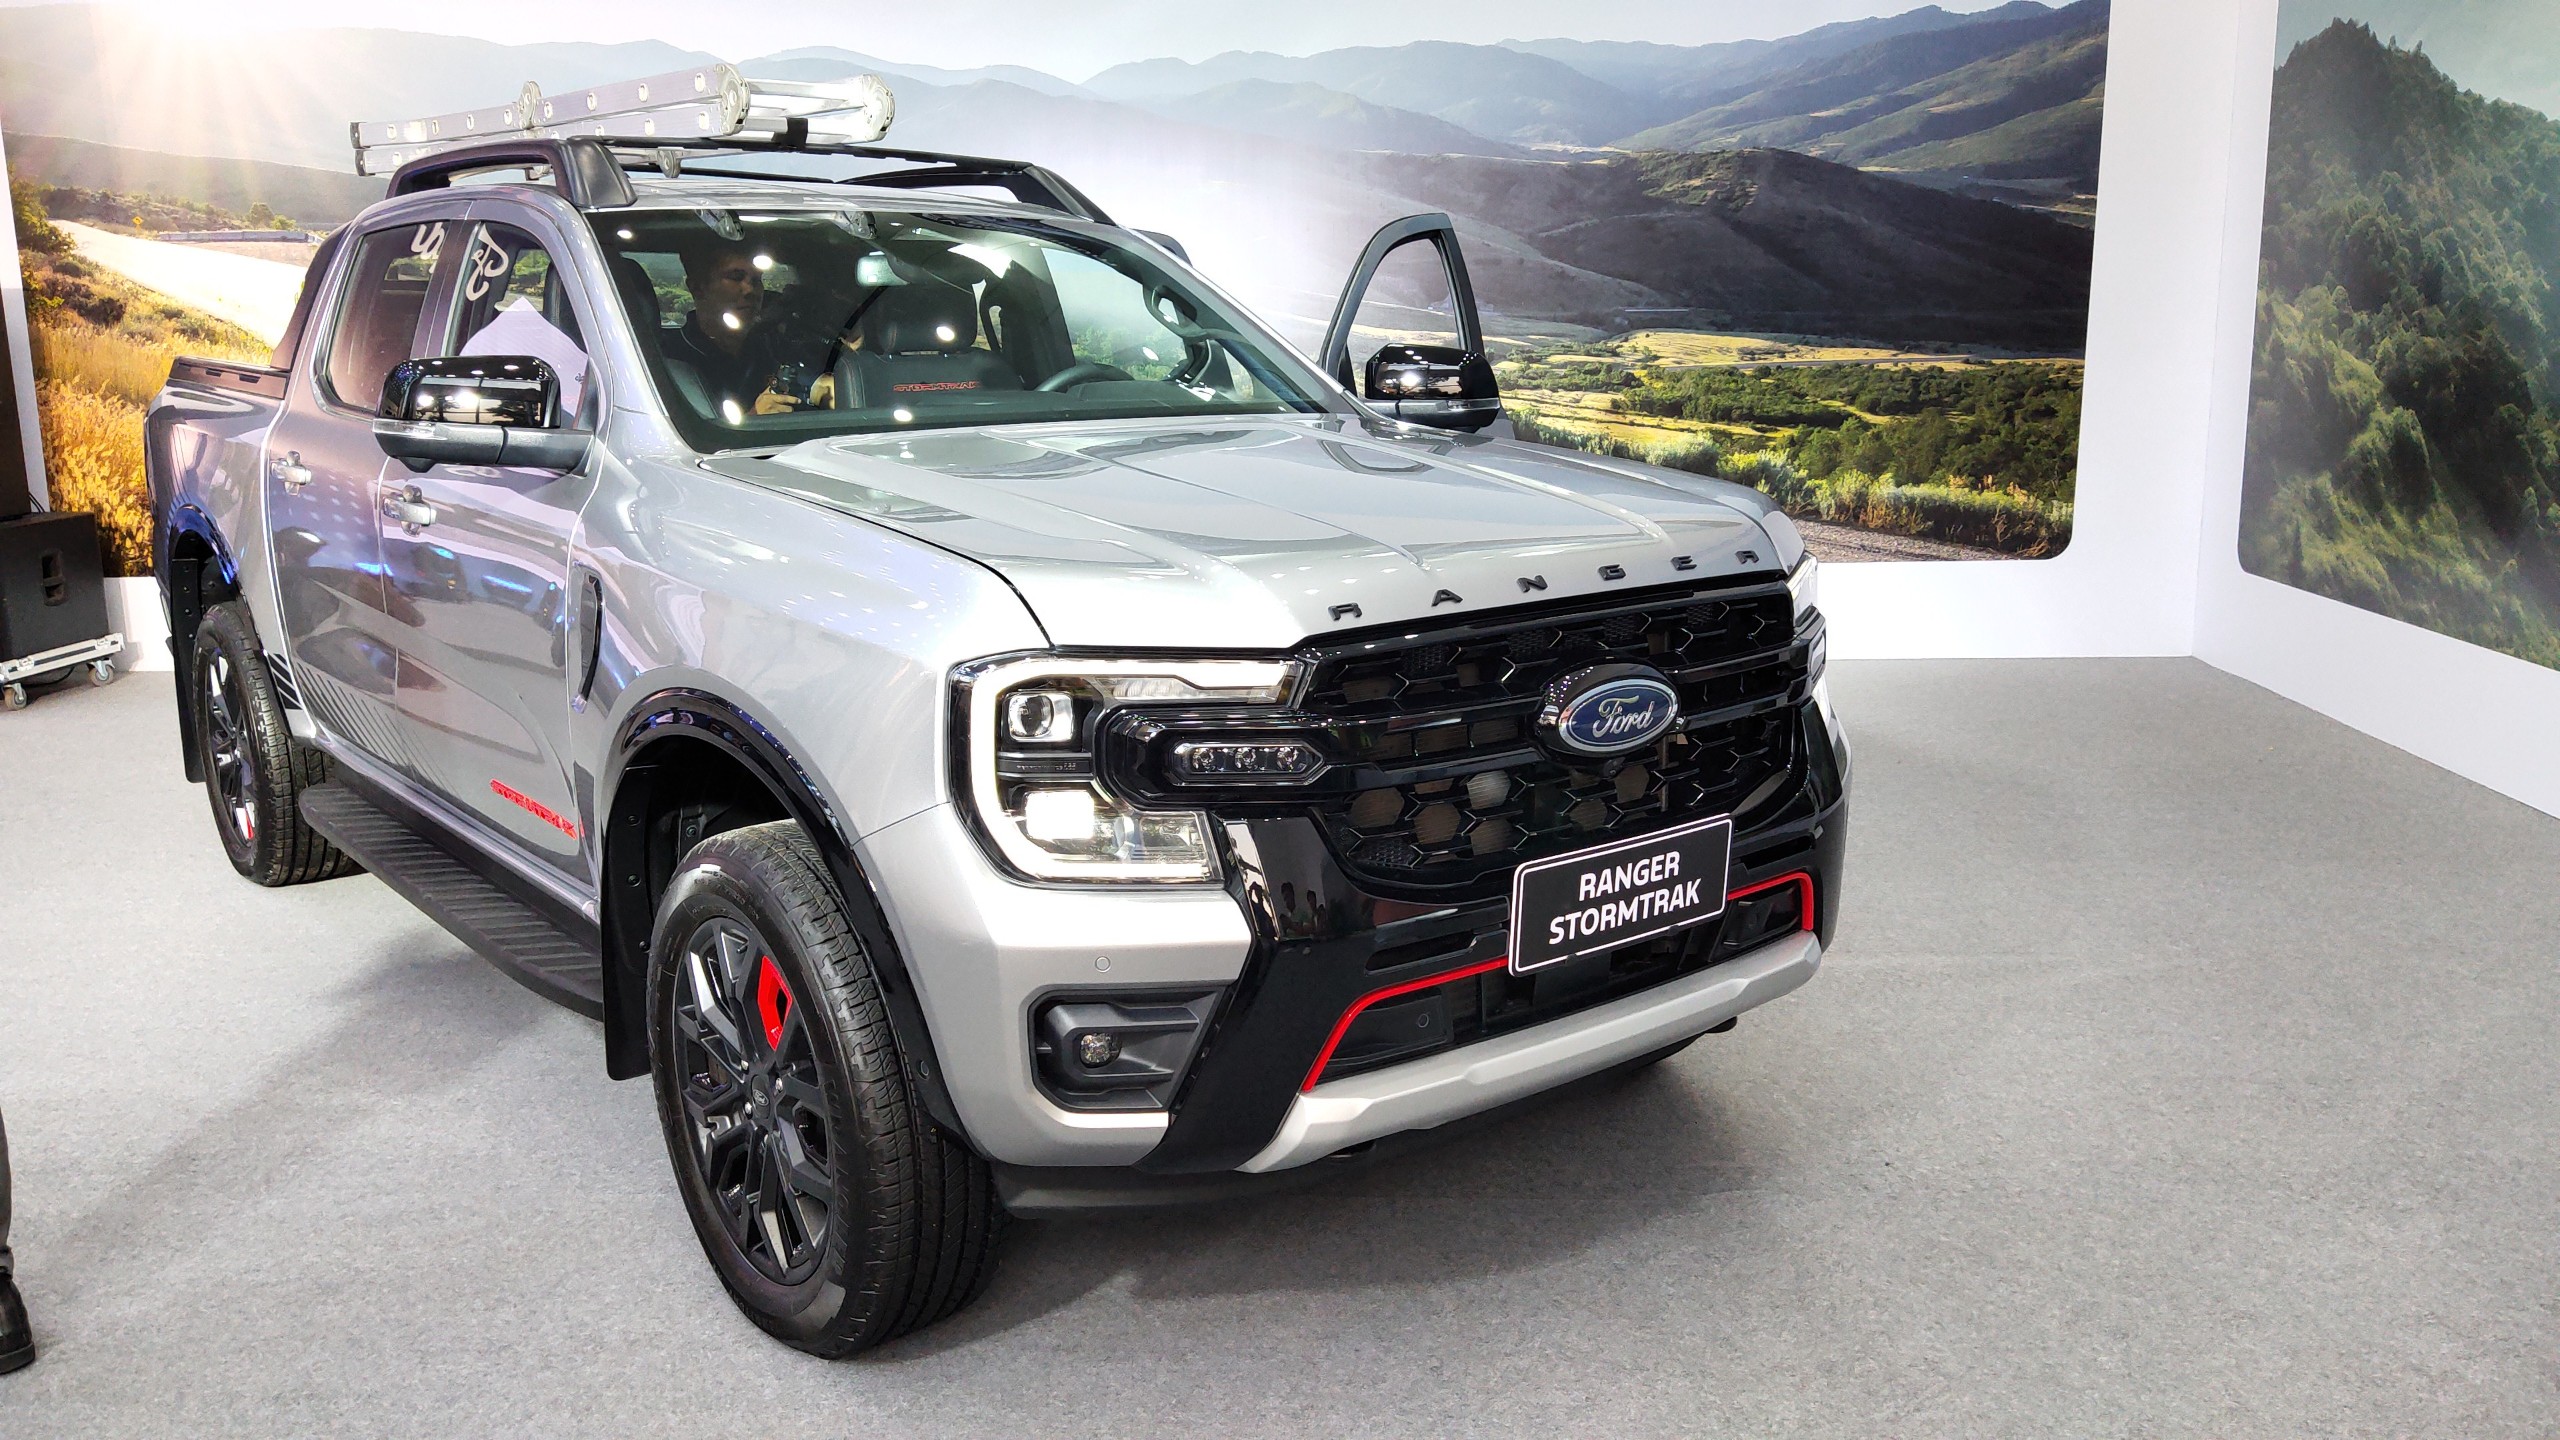 Có nên mua Ford Ranger Stormtrak vừa ra mắt với giá 1,039 tỷ đồng?